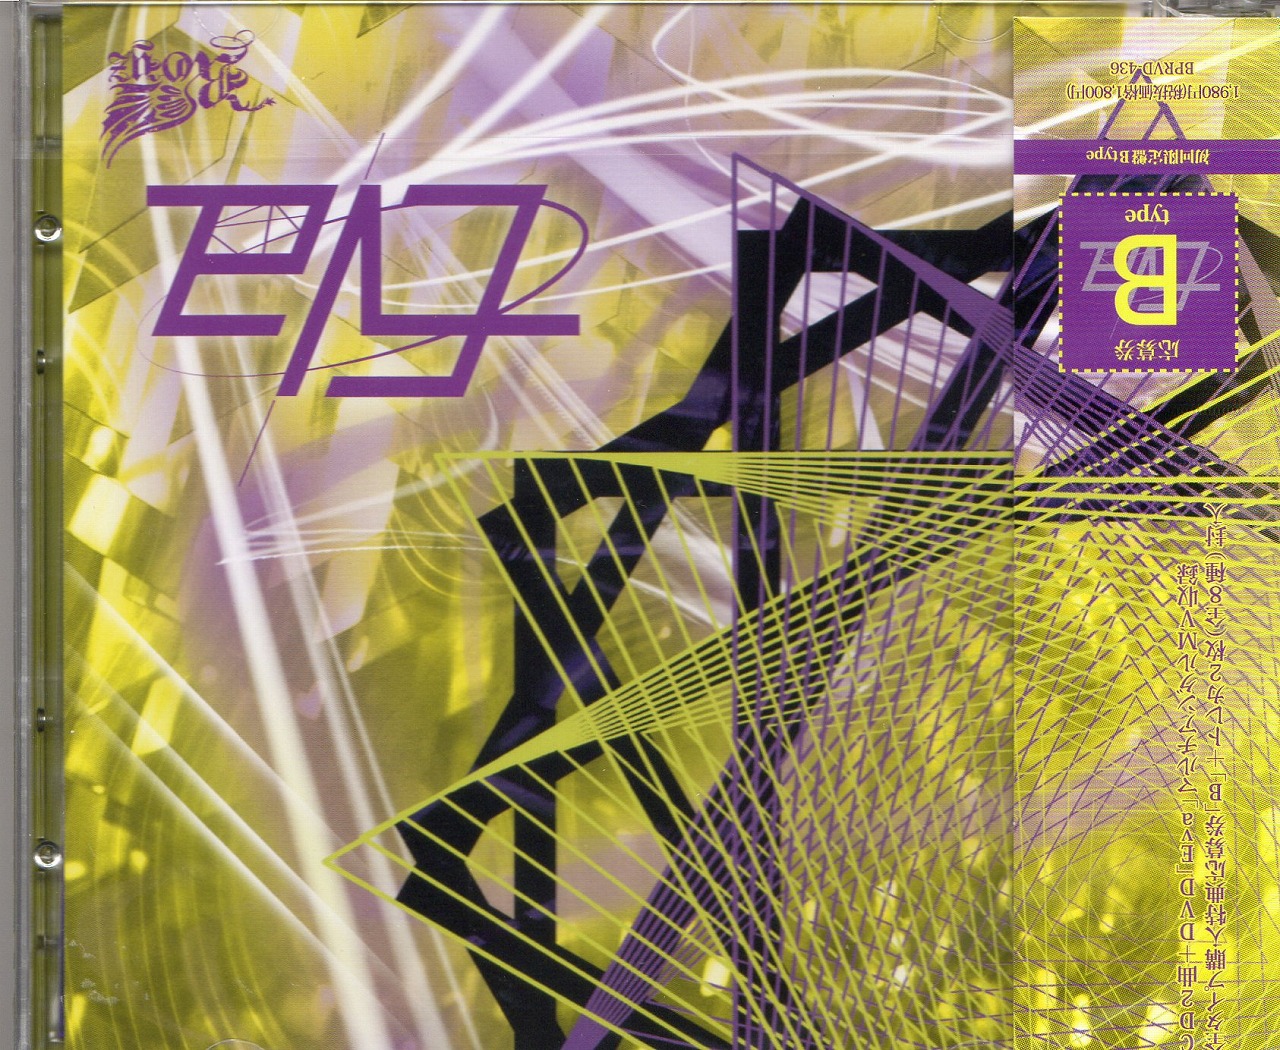 Royz の CD 【B Type】Eva